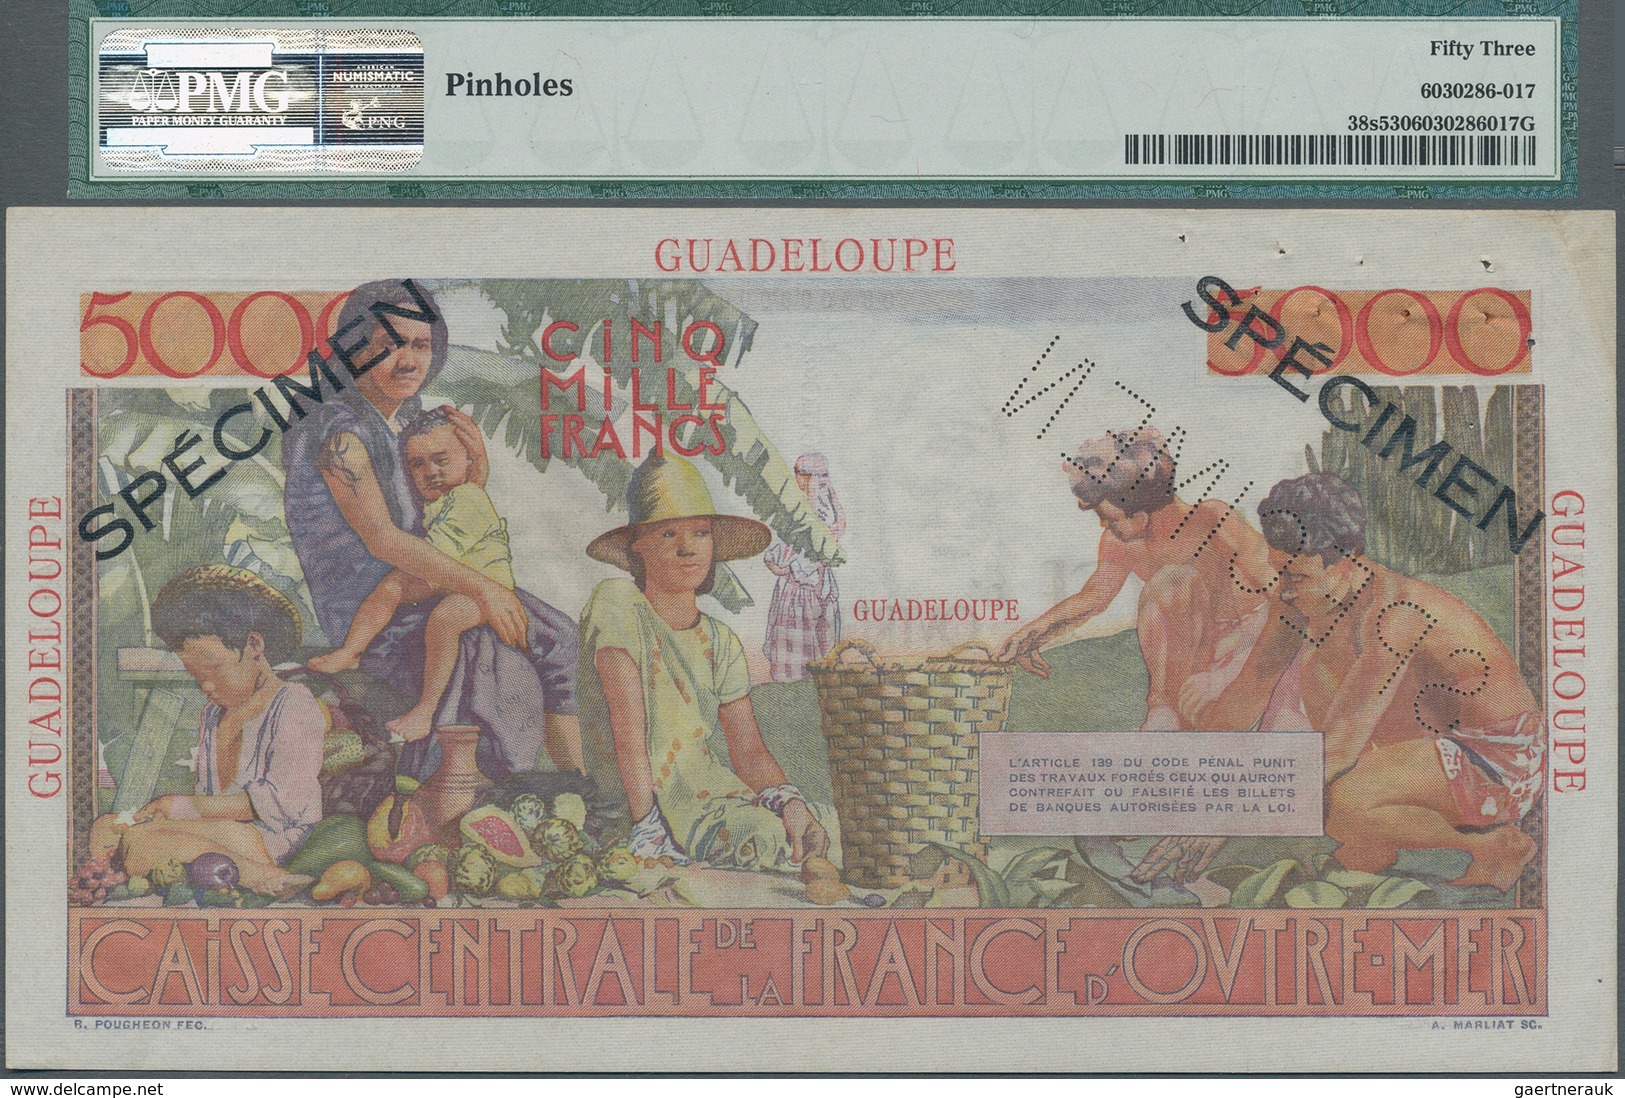 Guadeloupe: Caisse Centrale De La France D'Outre-Mer 5000 Francs ND(1952) SPECIMEN, P.38s, Tiny Dint - Autres - Amérique